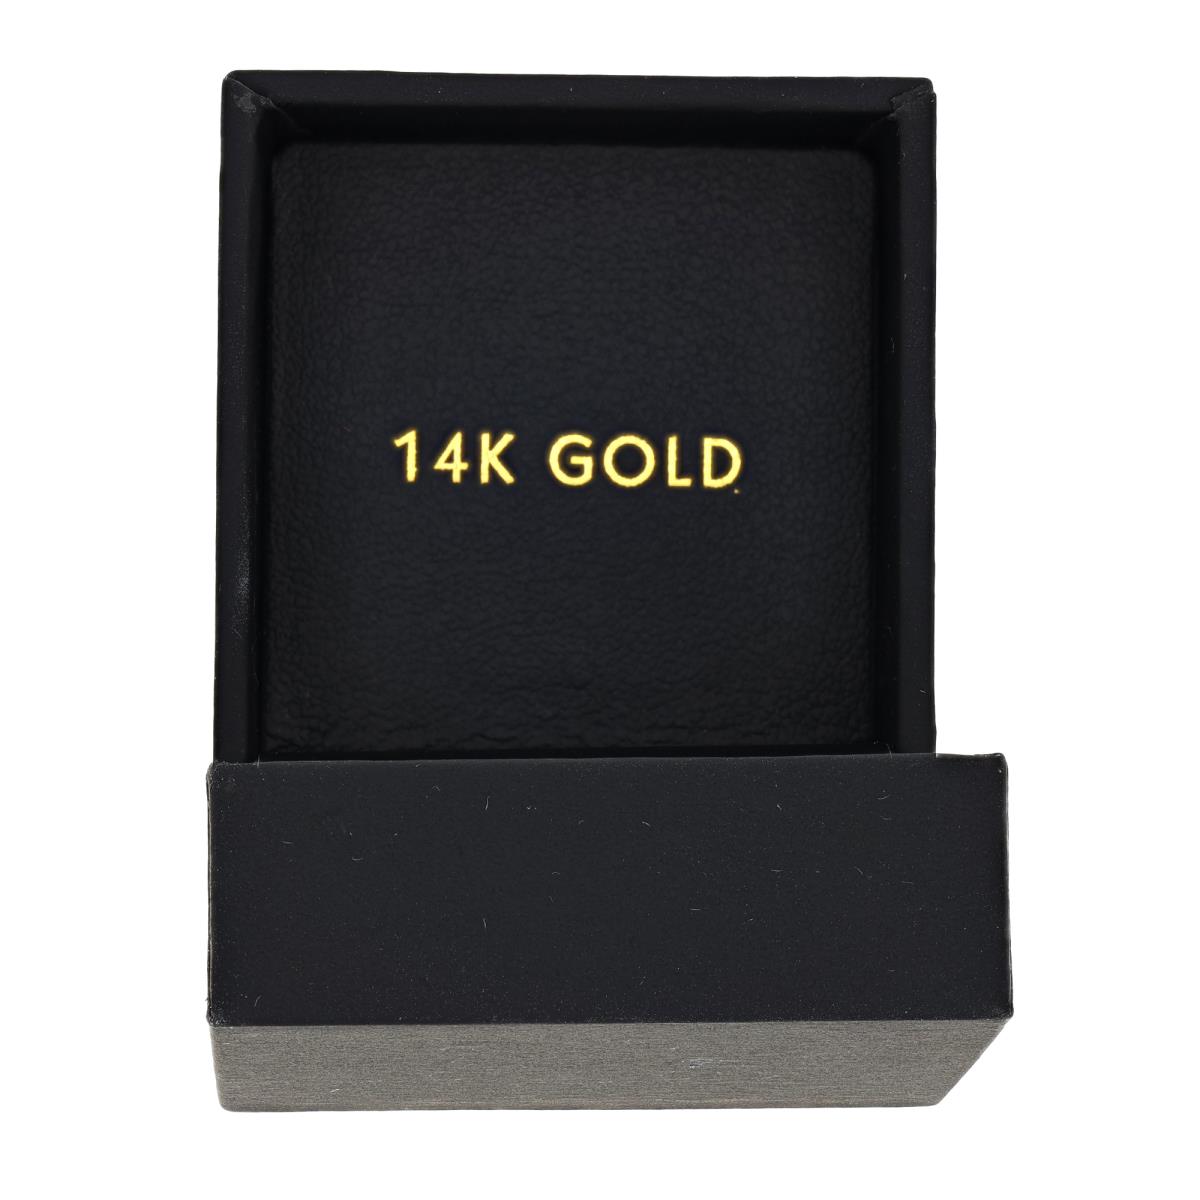 Black 14K Gold 46x46x36mm Hinged Box